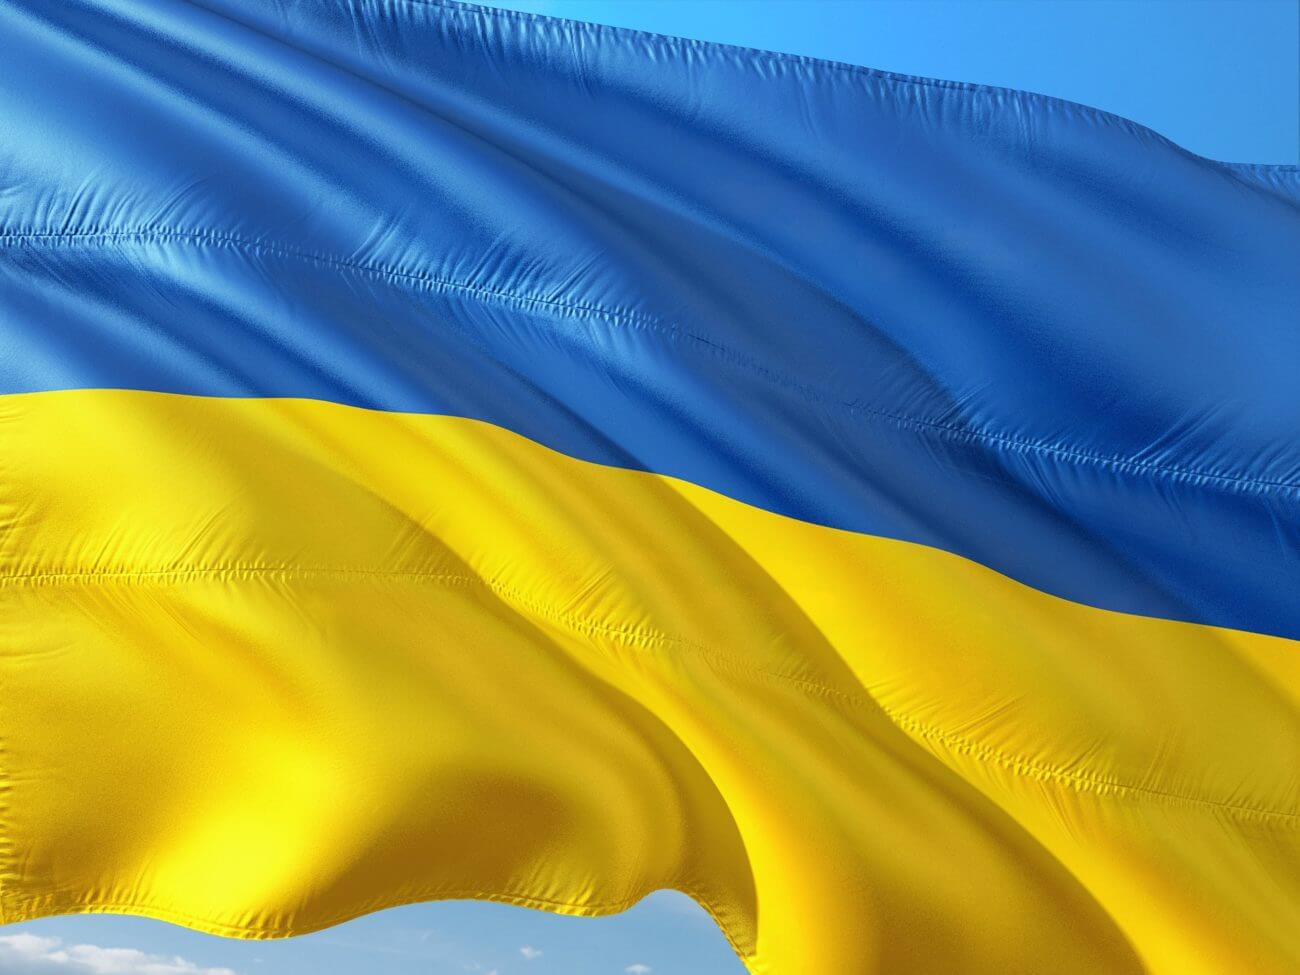 Η παγκόσμια βιομηχανία τυχερών παιχνιδιών ενώνεται για να υποστηρίξει τον λαό της Ουκρανίας